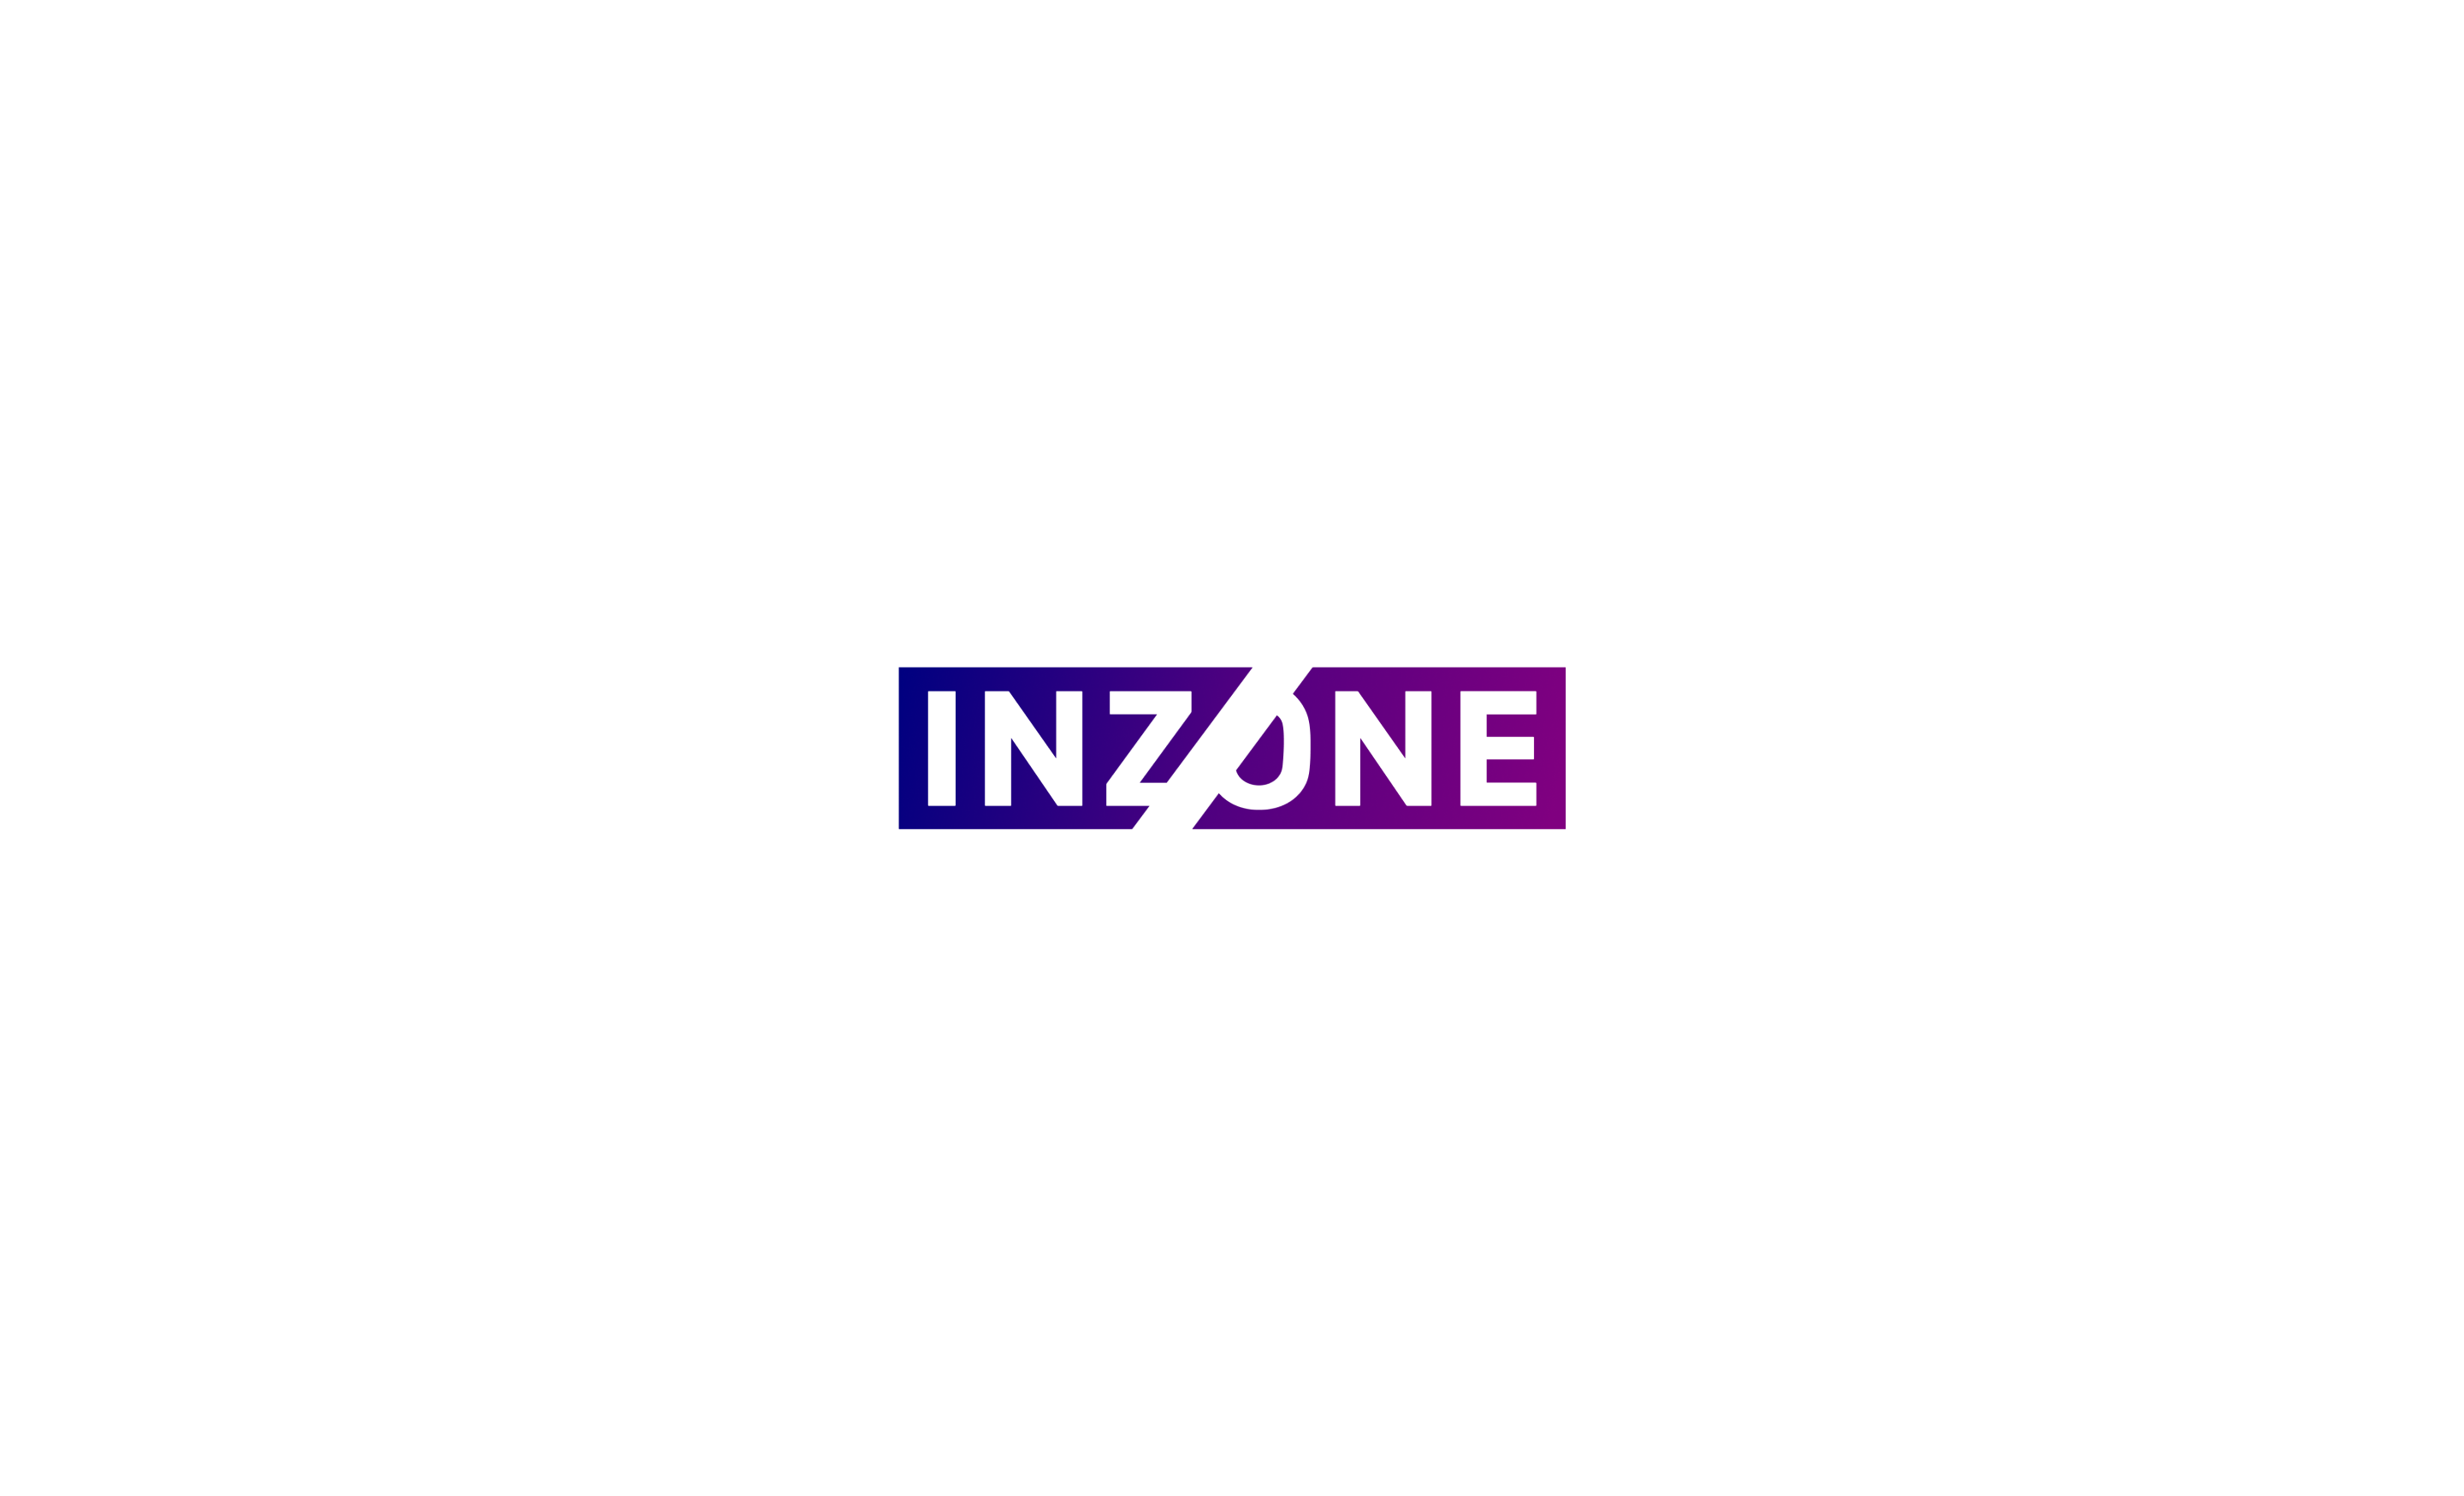 Inzone 標誌